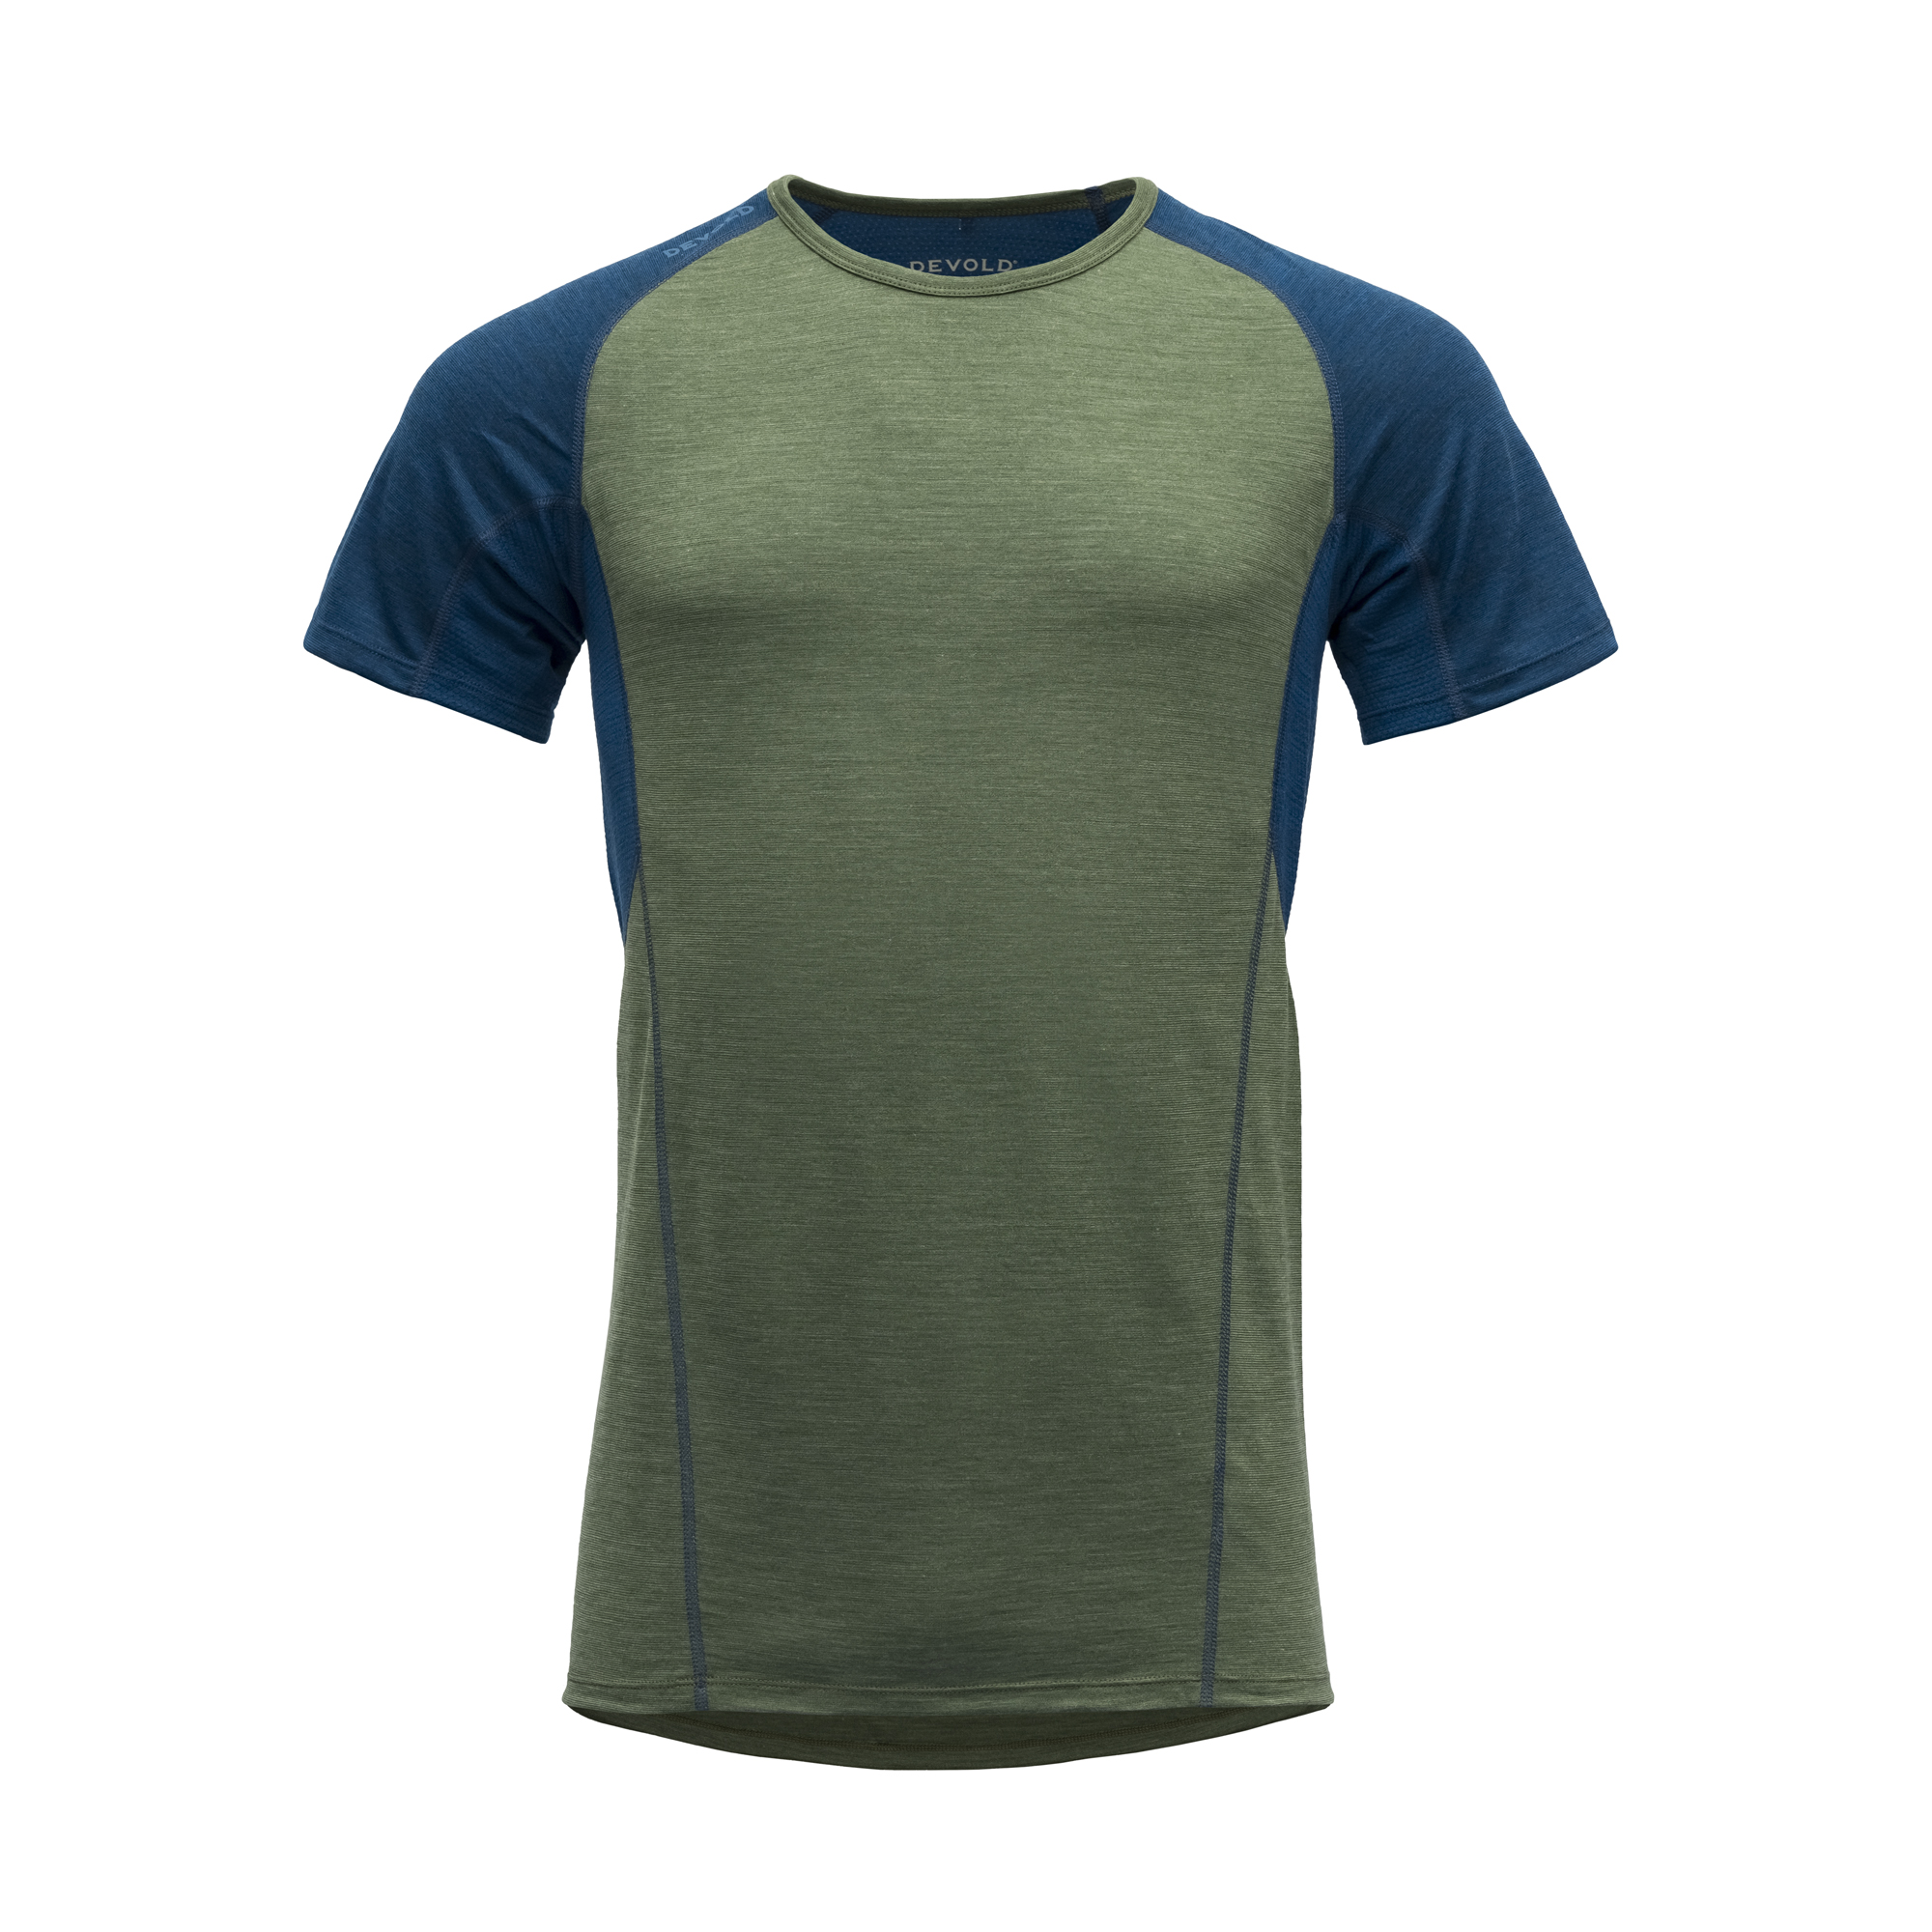 Devold Merino 130 tričko s krátkým rukávem - pánské - zelená/modrá Velikost: L